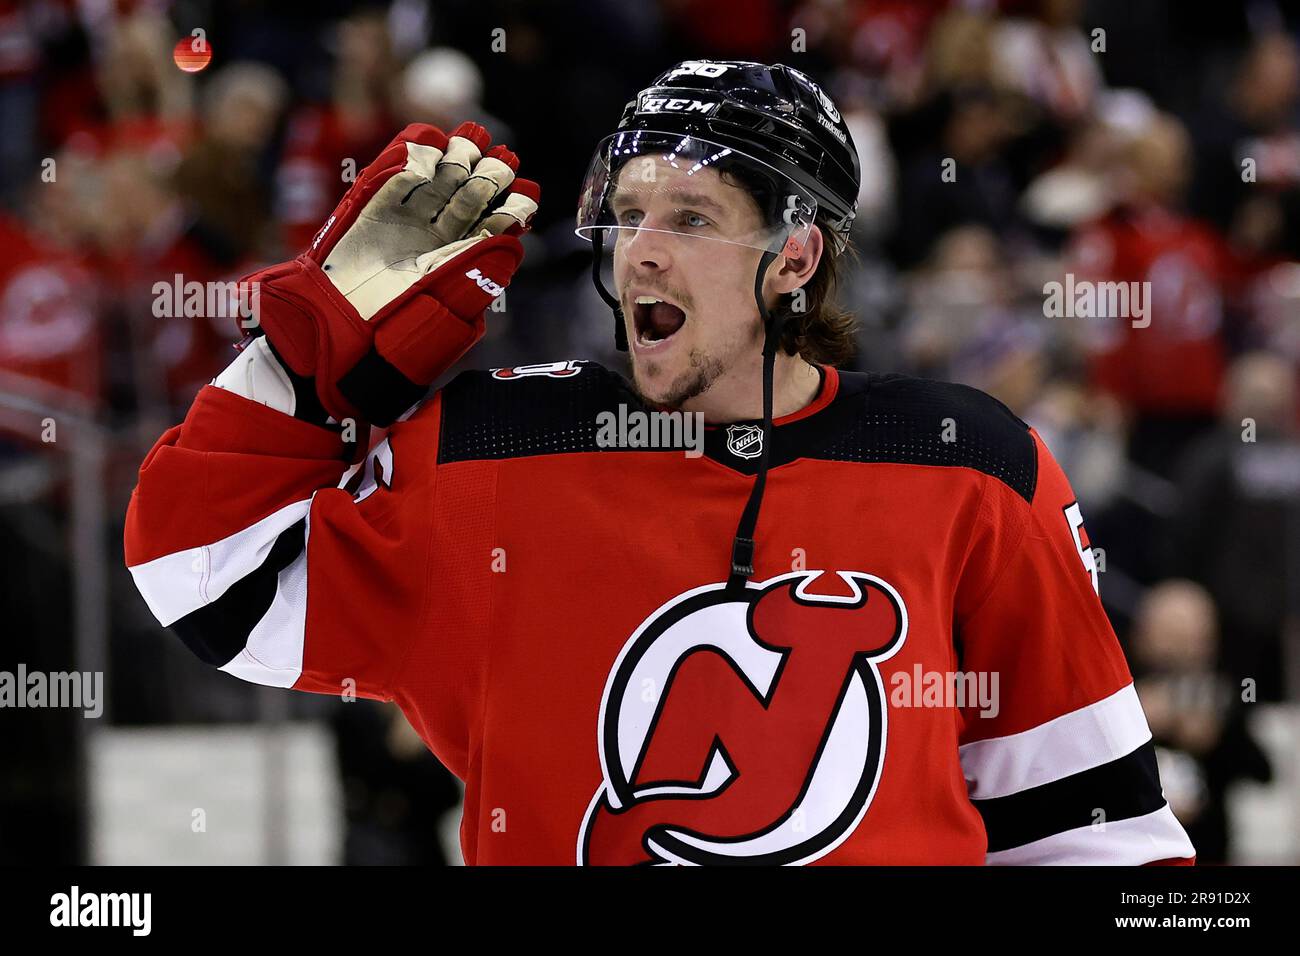 Former Devils Goaltender Announces Retirement from NHL - The New